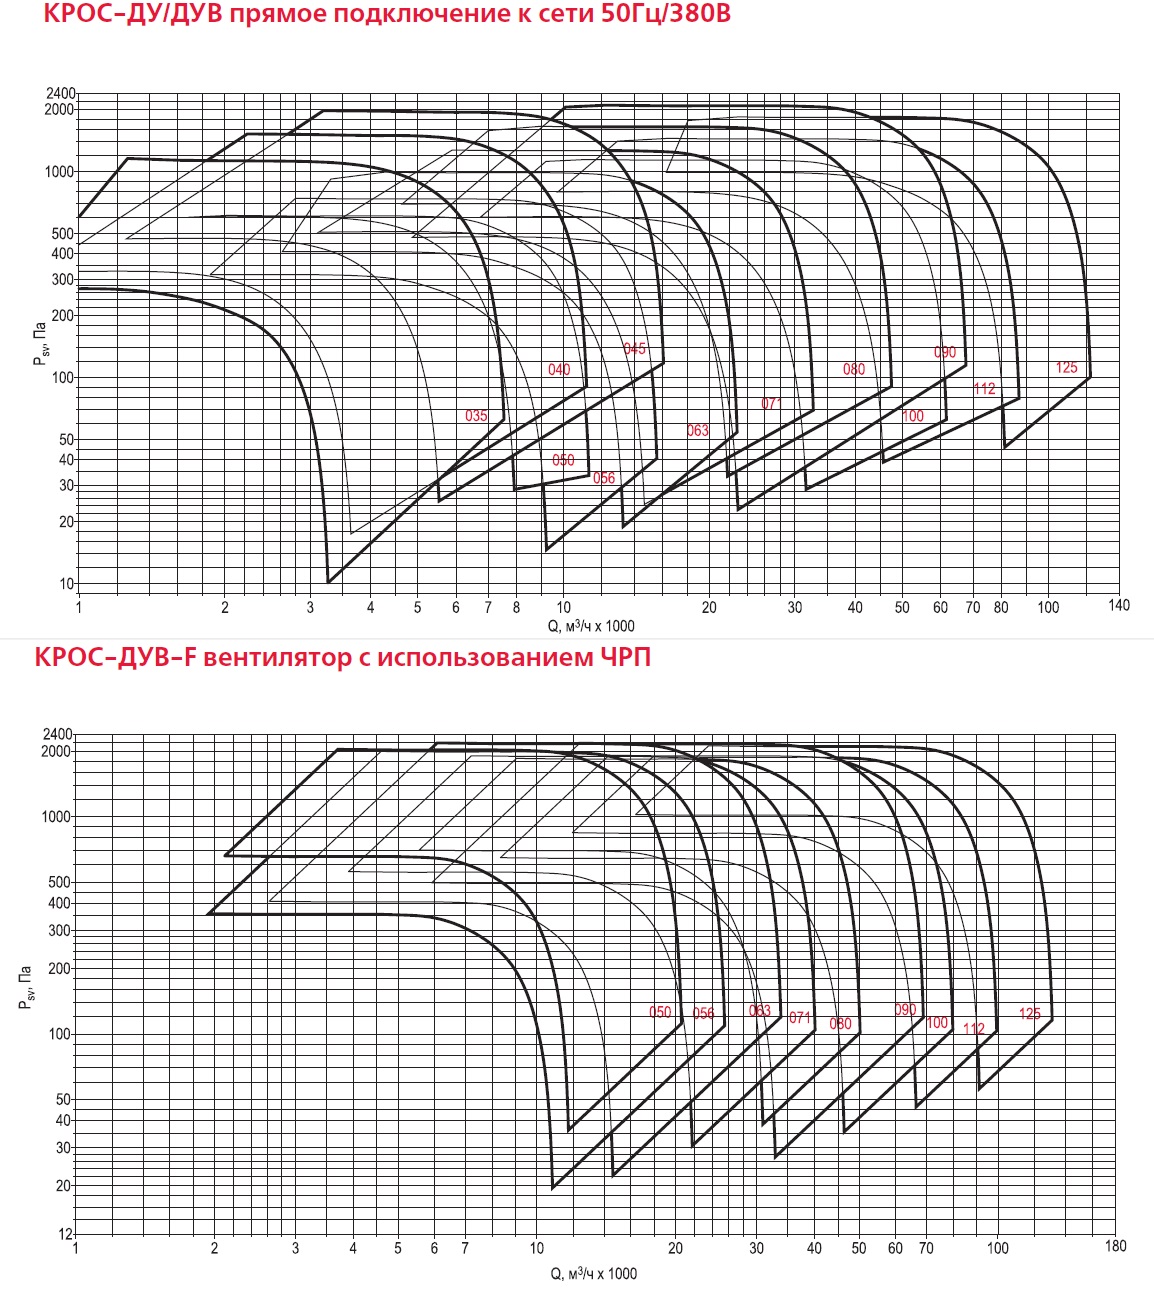 аэродинамические характеристики КРОС-Ду/Дув